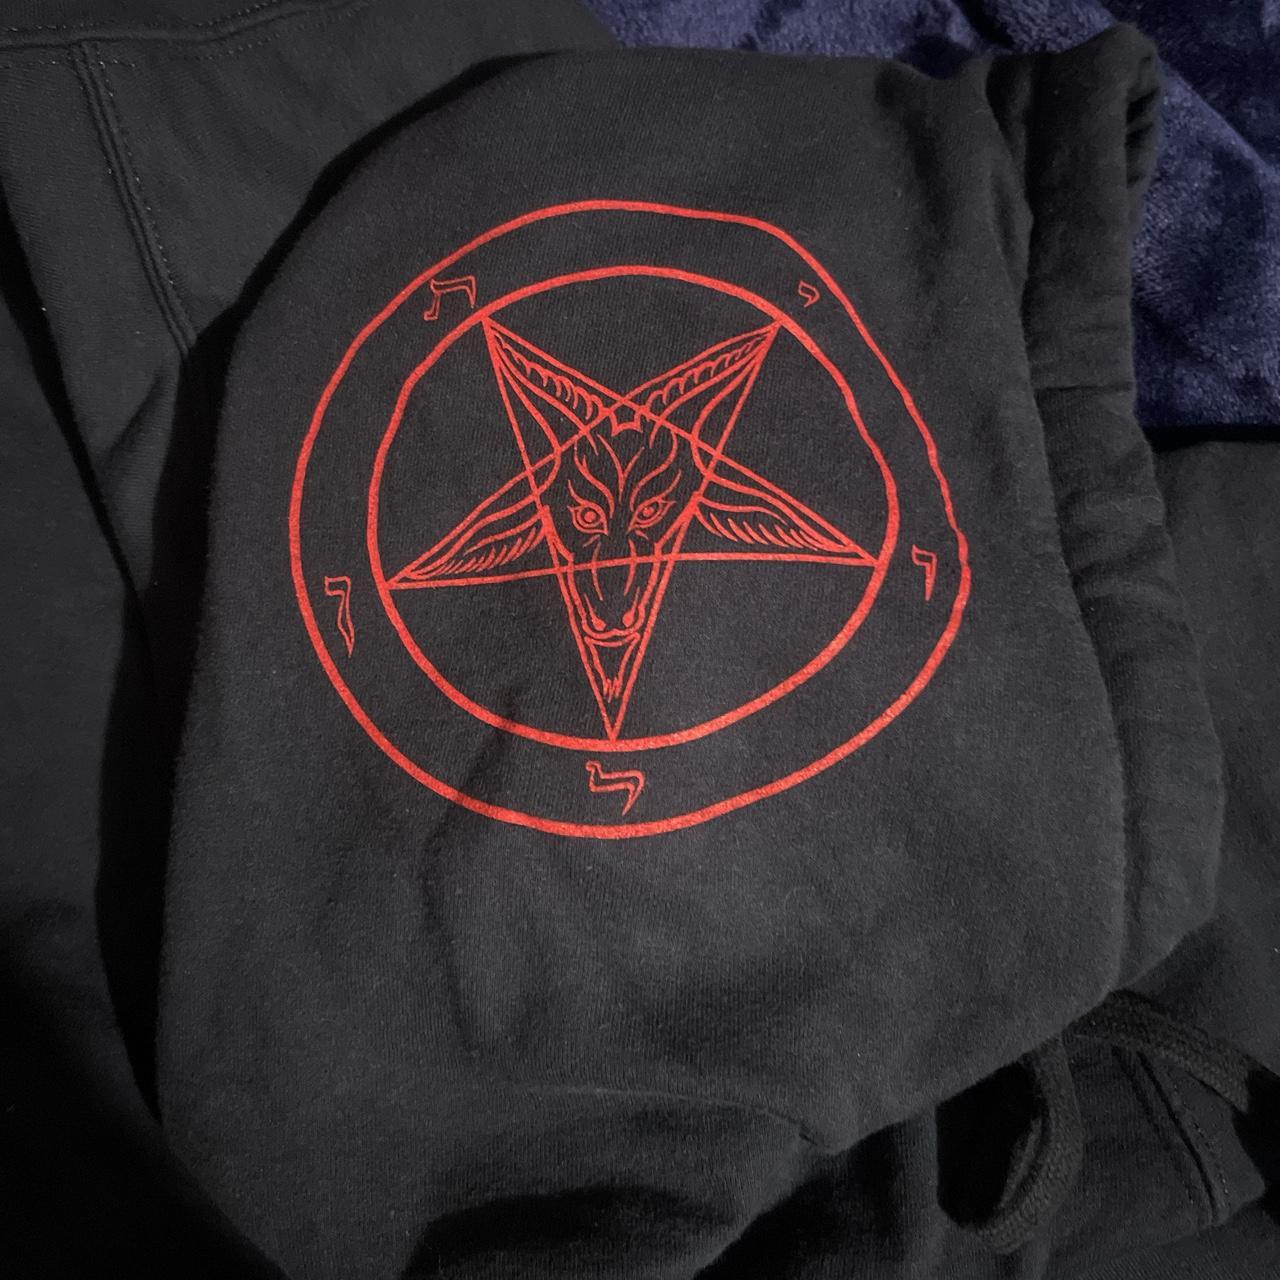 Blasphemy BLACK METAL SKINHEADS hoodie Has silly... - Depop